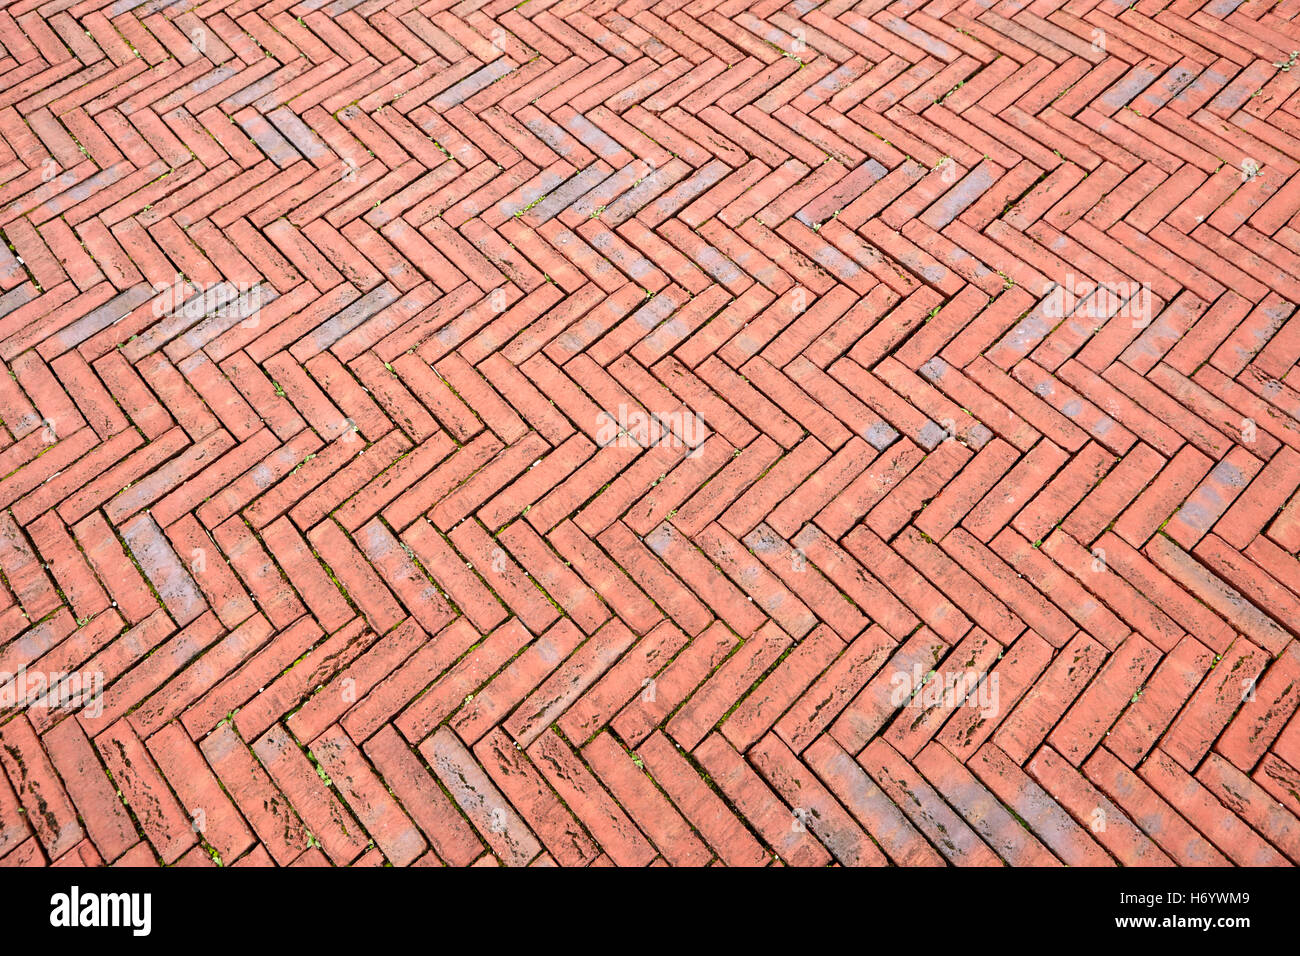 Diseño espigado pavimentación de ladrillo rojo en la bahía de Cardiff Wales Reino Unido Foto de stock